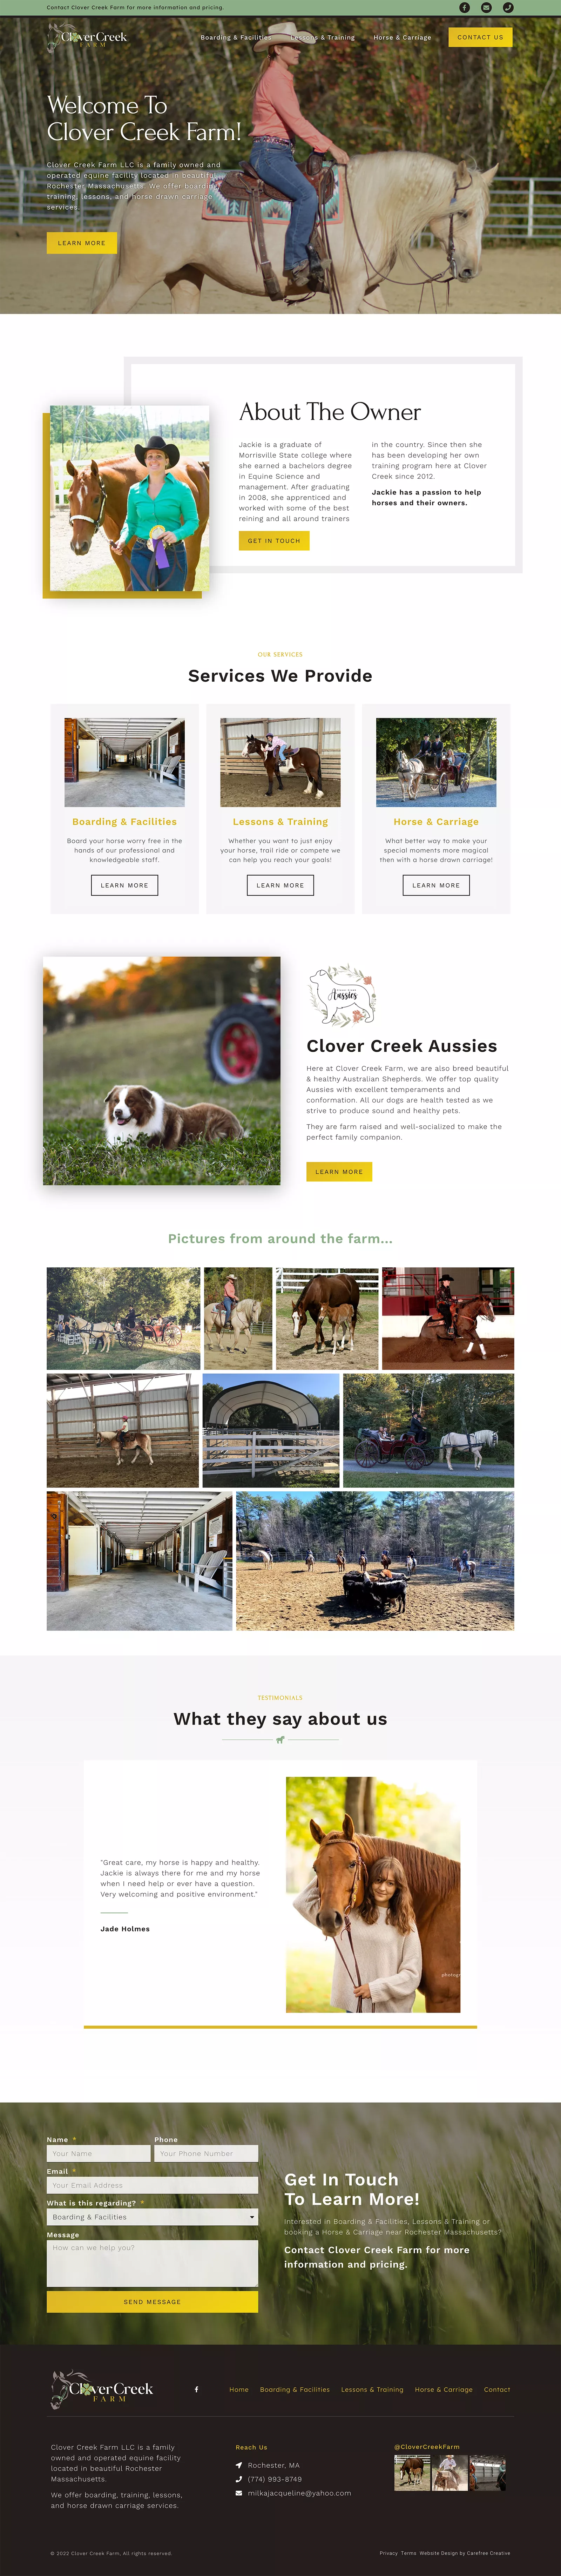 Clover Creek Farm Website Full